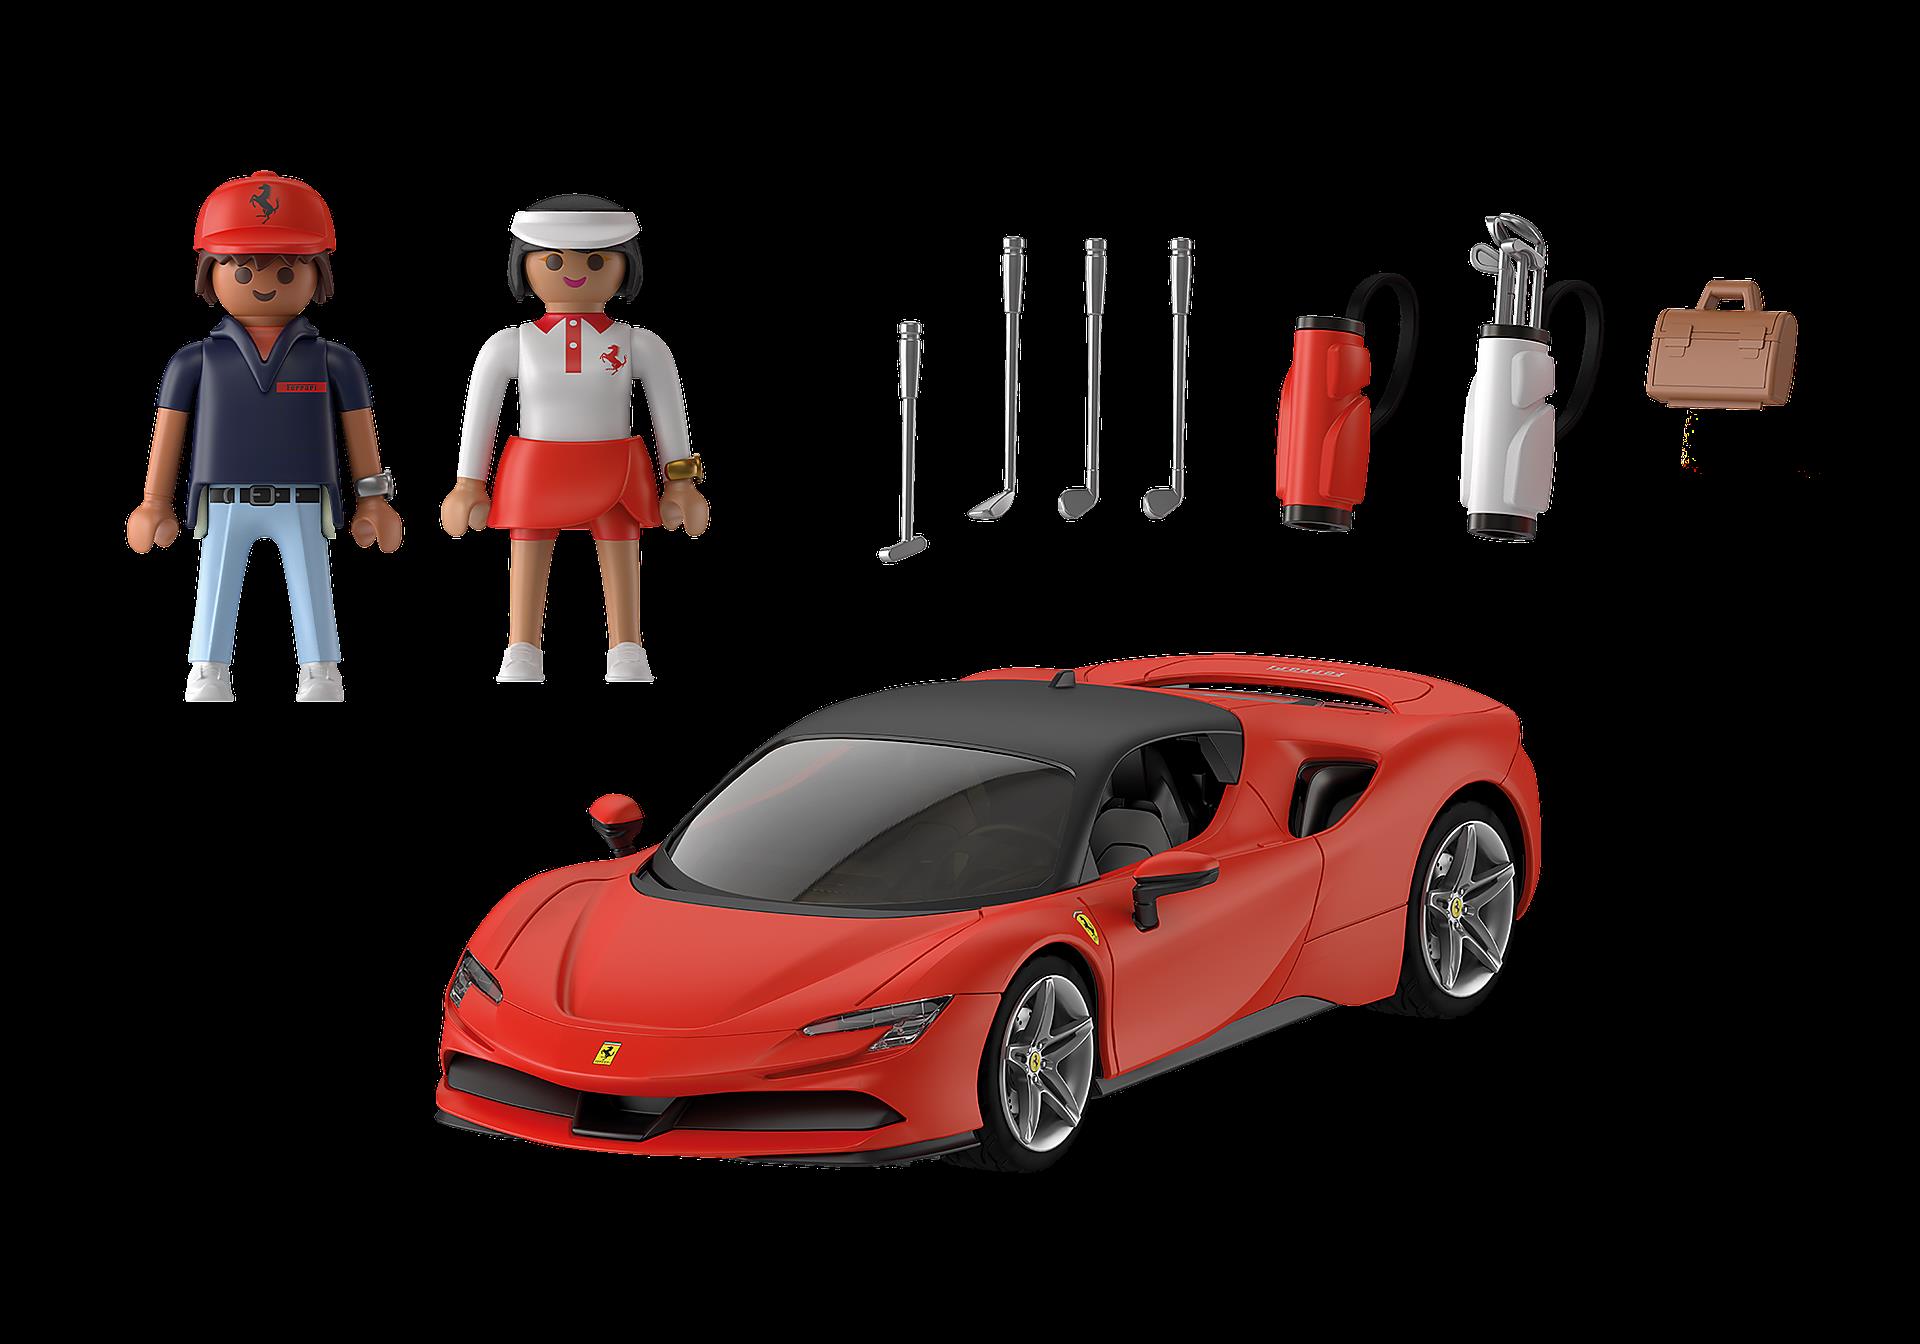 Playmobil Figures Ferrari SF90 Stradale (71020)